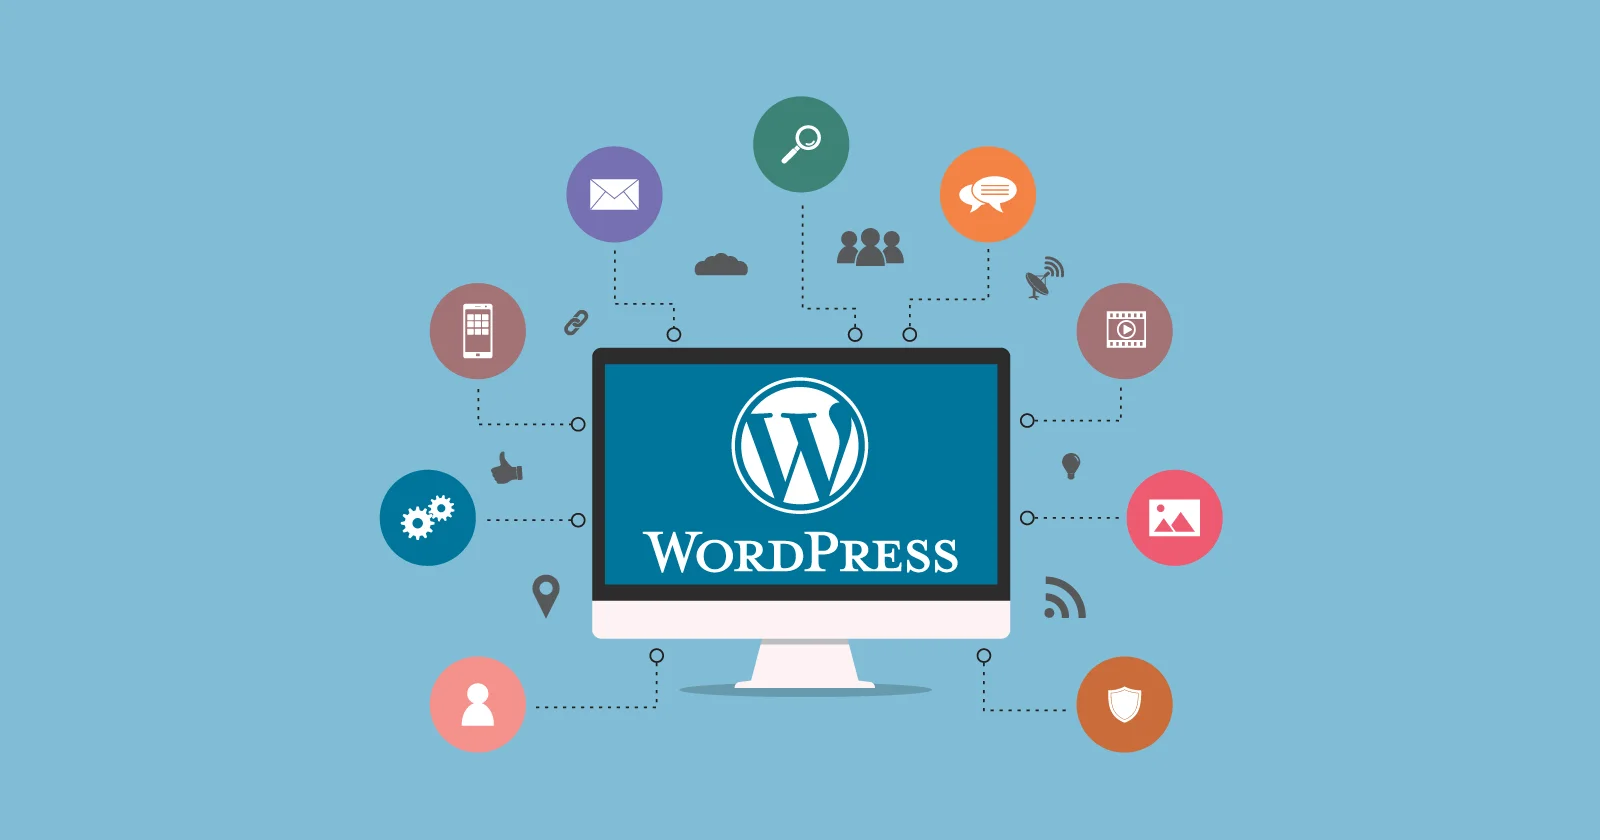 Wordpress logosunu barindiran bir tanitim görseli.